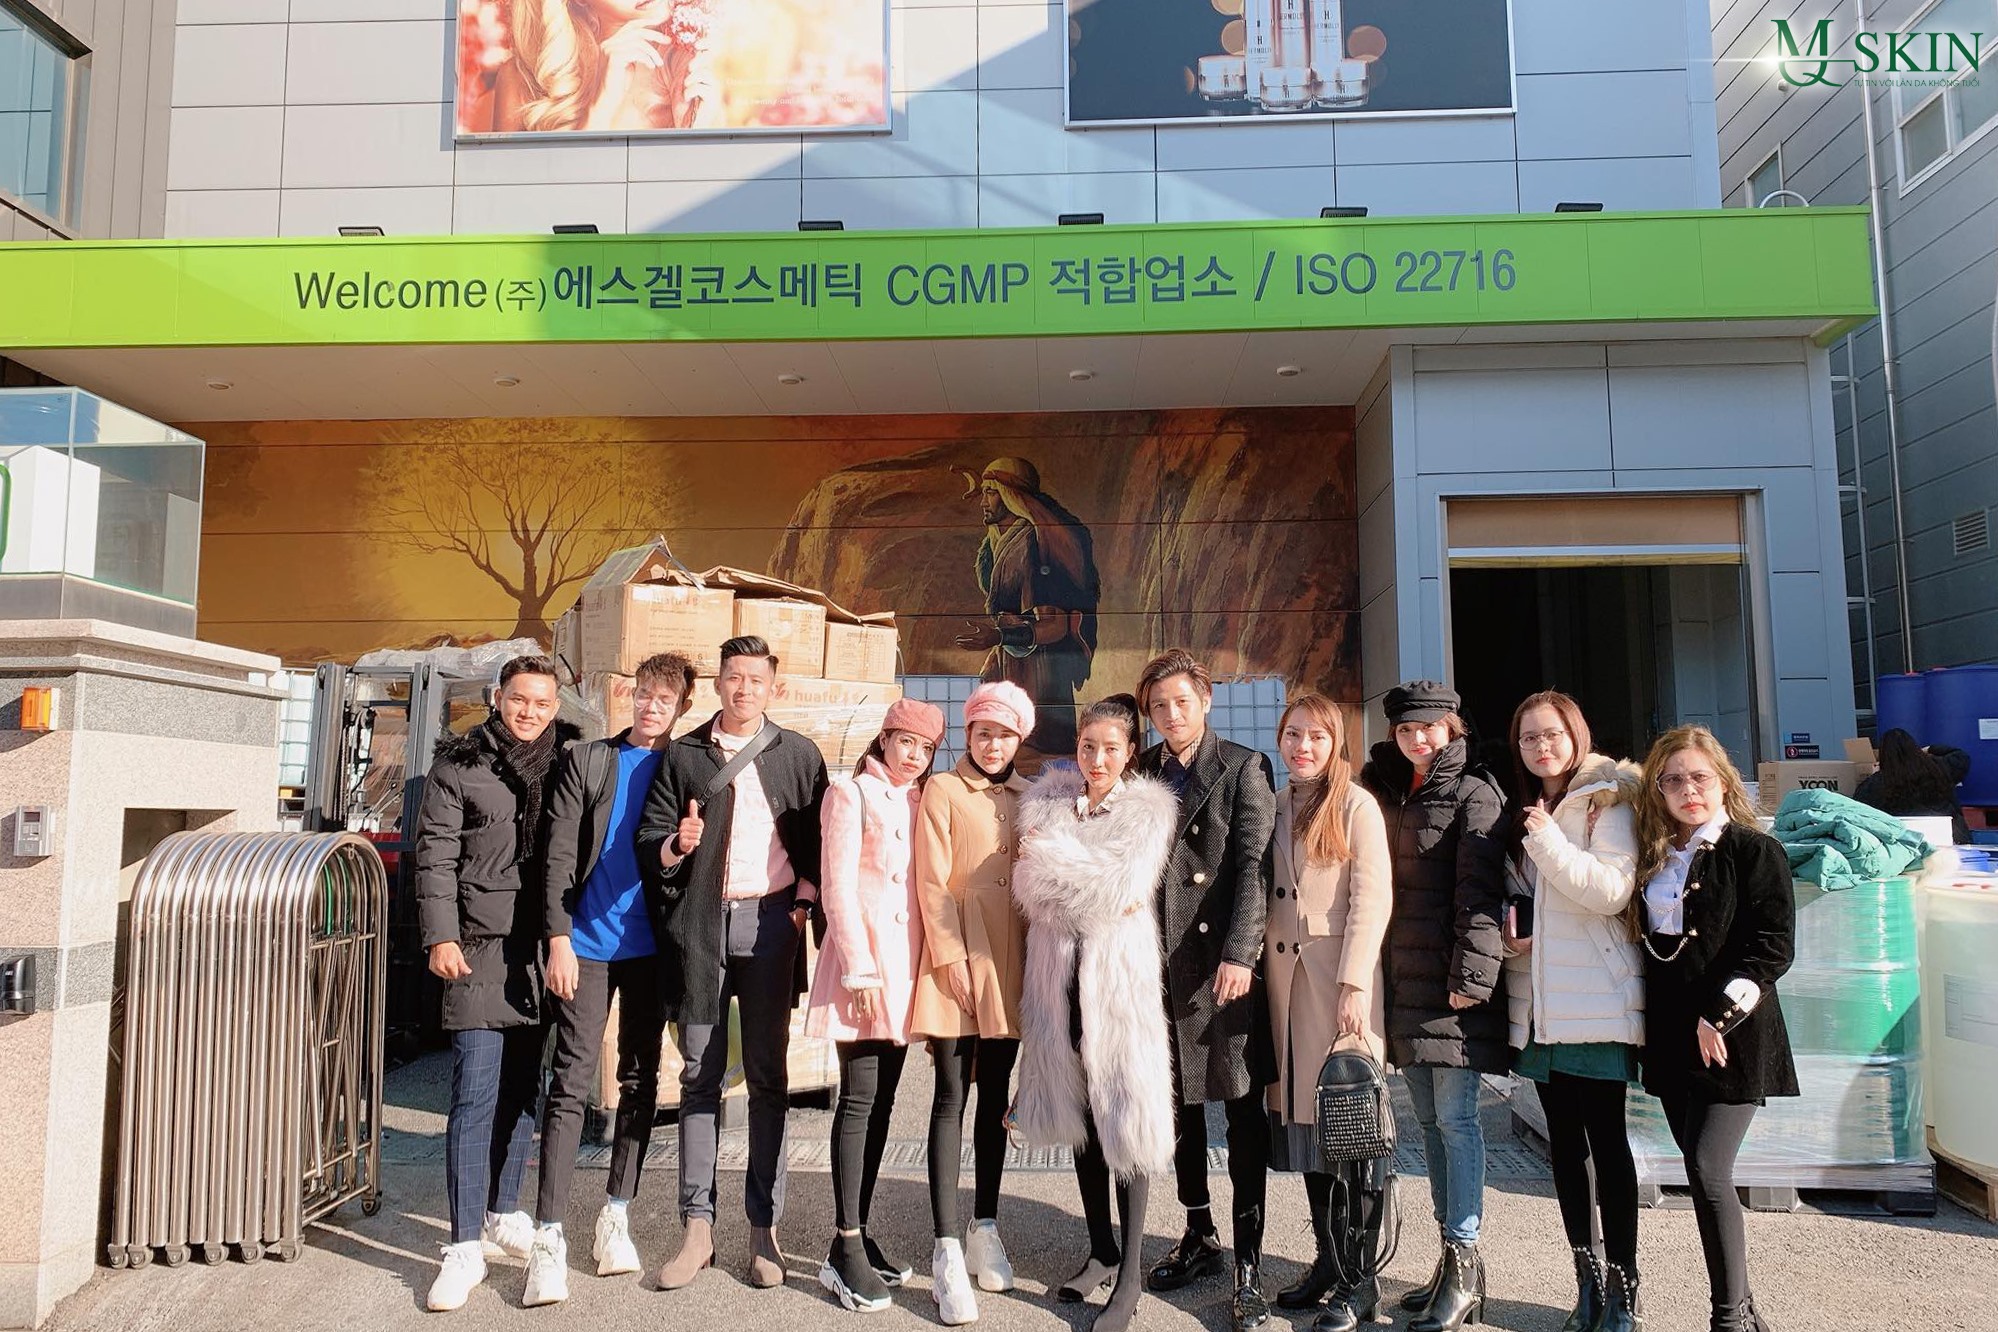 Hệ thống công ty MQ Skin và chuyến đi thăm Hàn Quốc